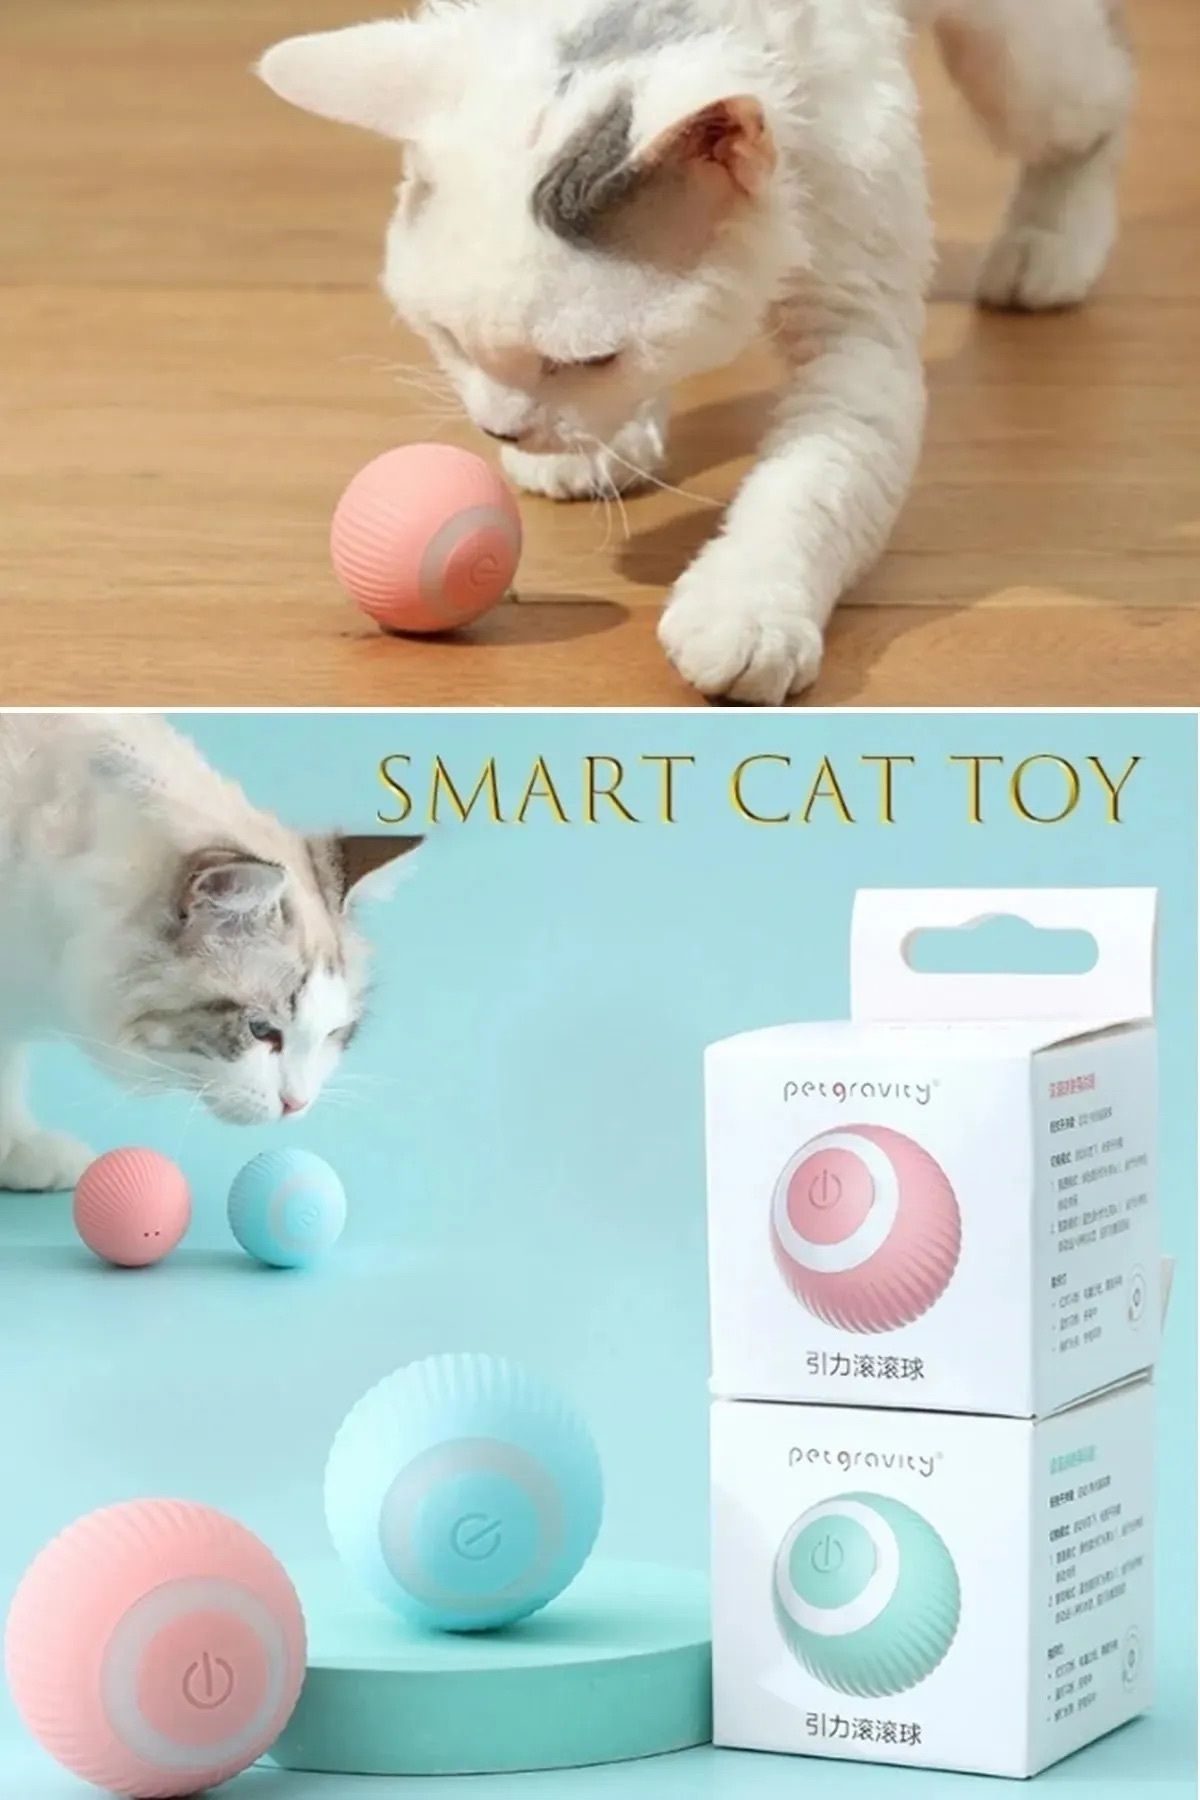 BEYZANA Akıllı Kedi Topu, Kendinden Hareketli Kedi Oyuncağı, Interaktif Kedi Köpek Topu, Kedi Topu